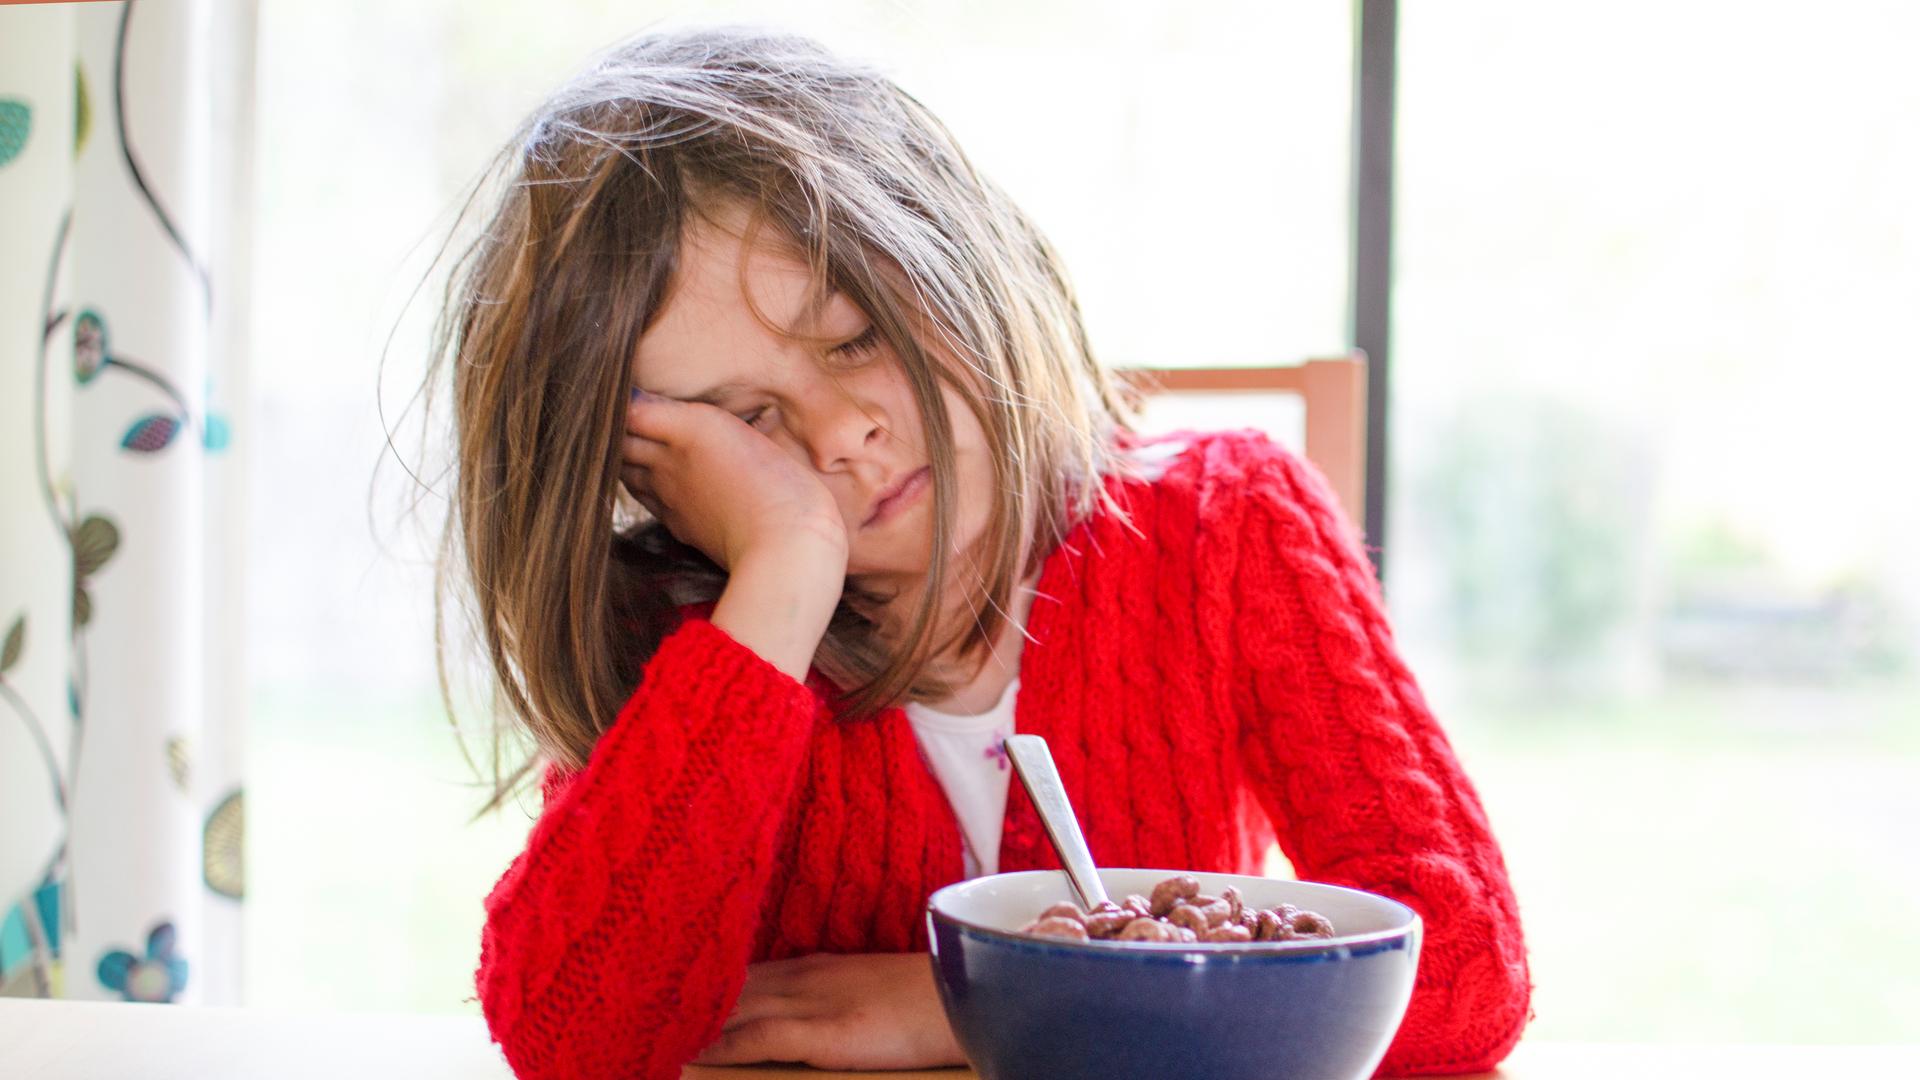 Ein müdes Kind sitzt mit geschlossenen Augen und aufgestütztem Kopf vor einer Schüssel Frühstücksflocken